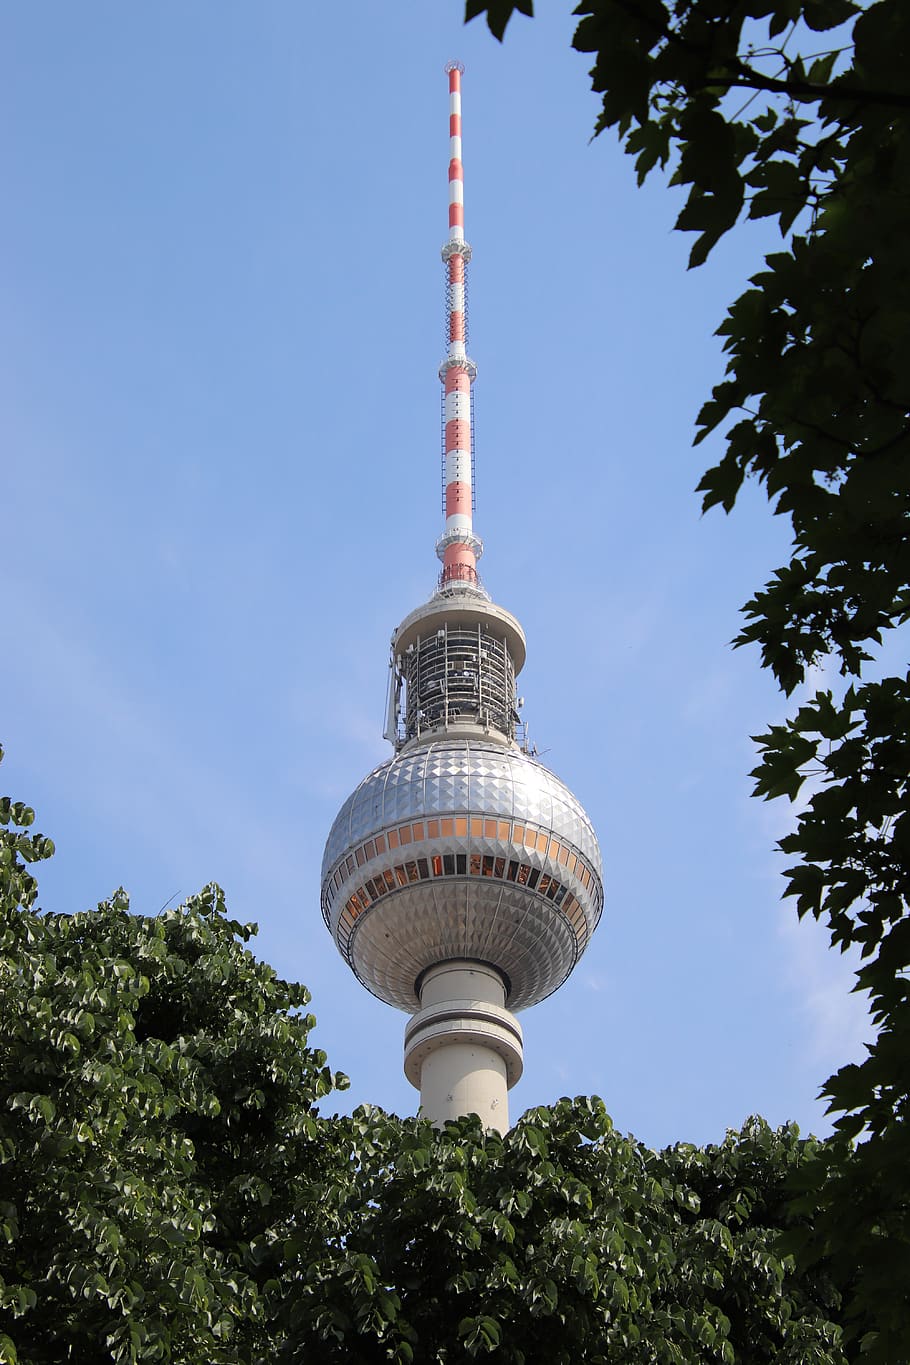 menara tv, Daun-daun, pohon, Berlin, alexanderplatz, modal, tempat-tempat menarik, tengara, alex, langit